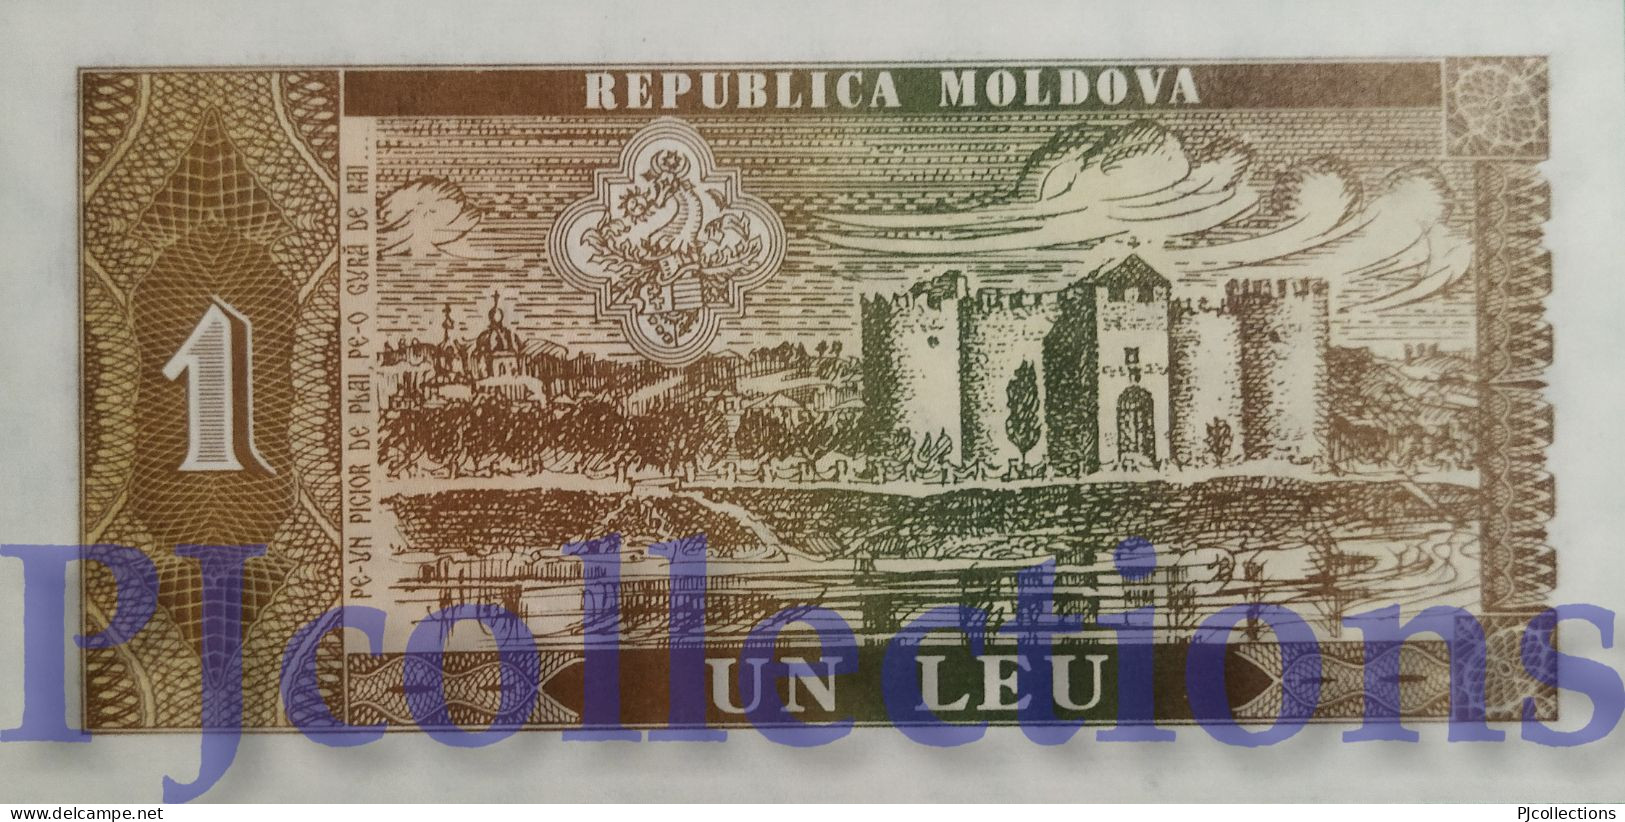 MOLDOVA 1 LEU 1992 PICK 5 UNC - Moldavia